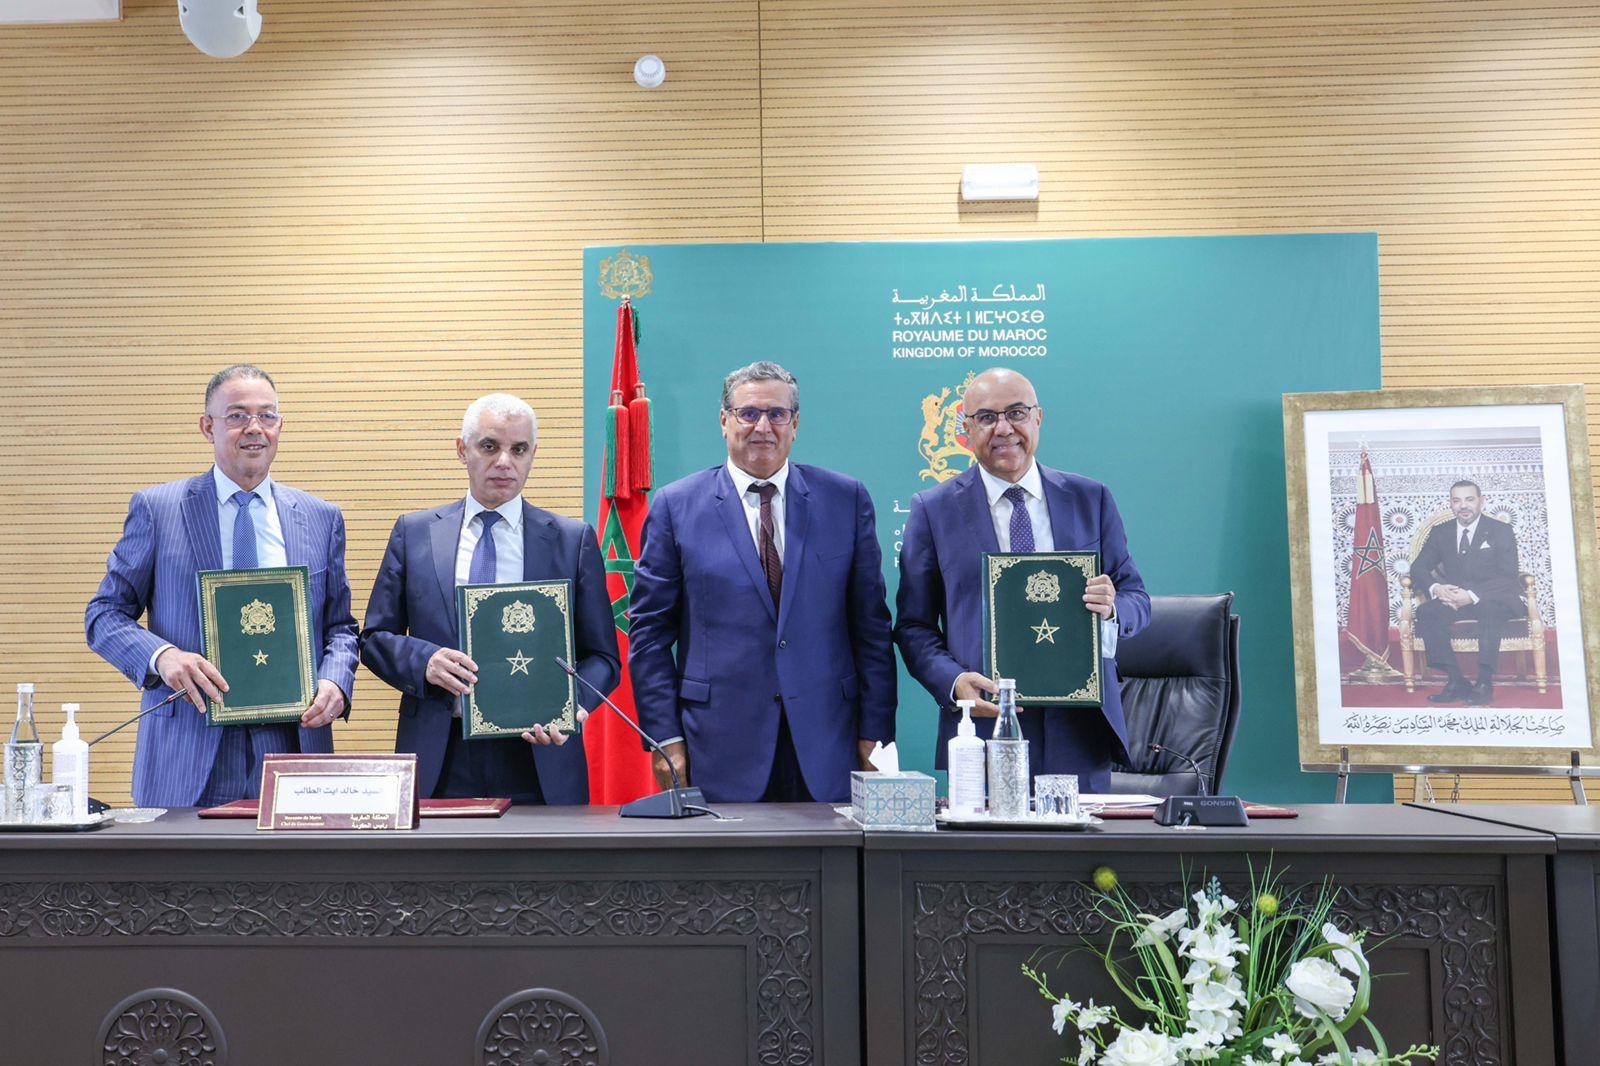 أخنوش يشرف على توقيع اتفاقية رفع عدد مهنيي الصحة بتكلفة 3 مليارات درهم